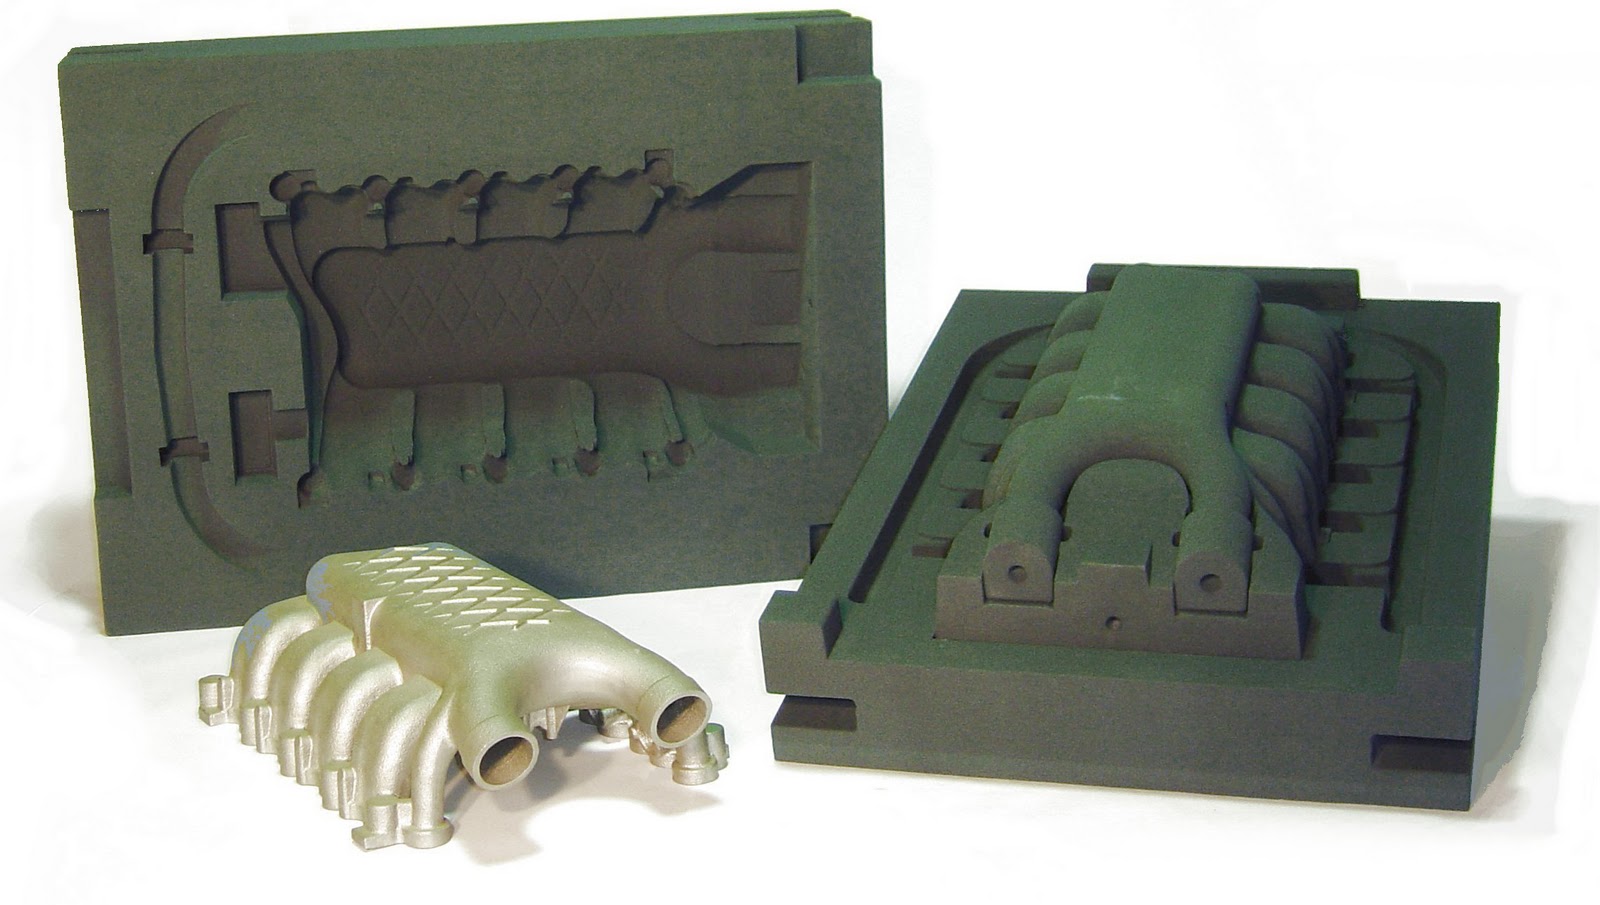 Modernización Loco forma Prototipos rápidos: Moldes de arean para fundición fabricado en impresora 3D